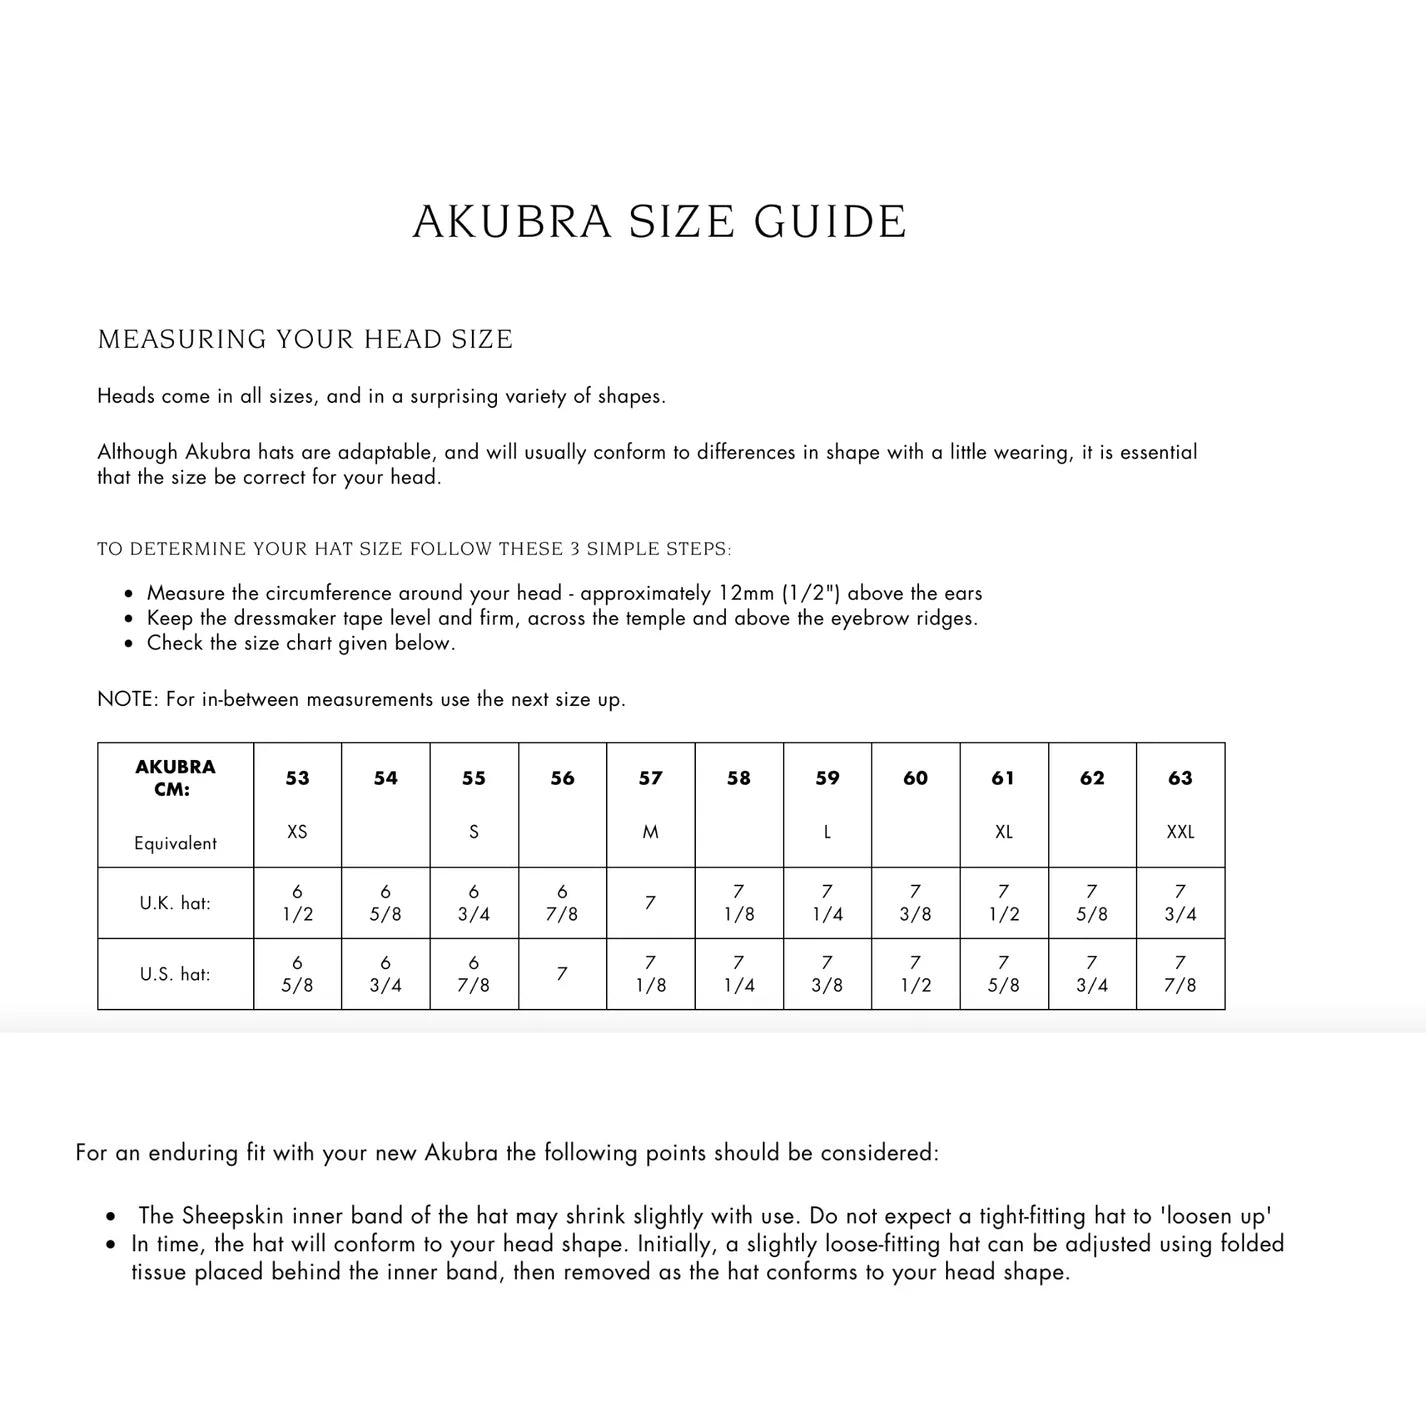 What size Akubra should I buy?